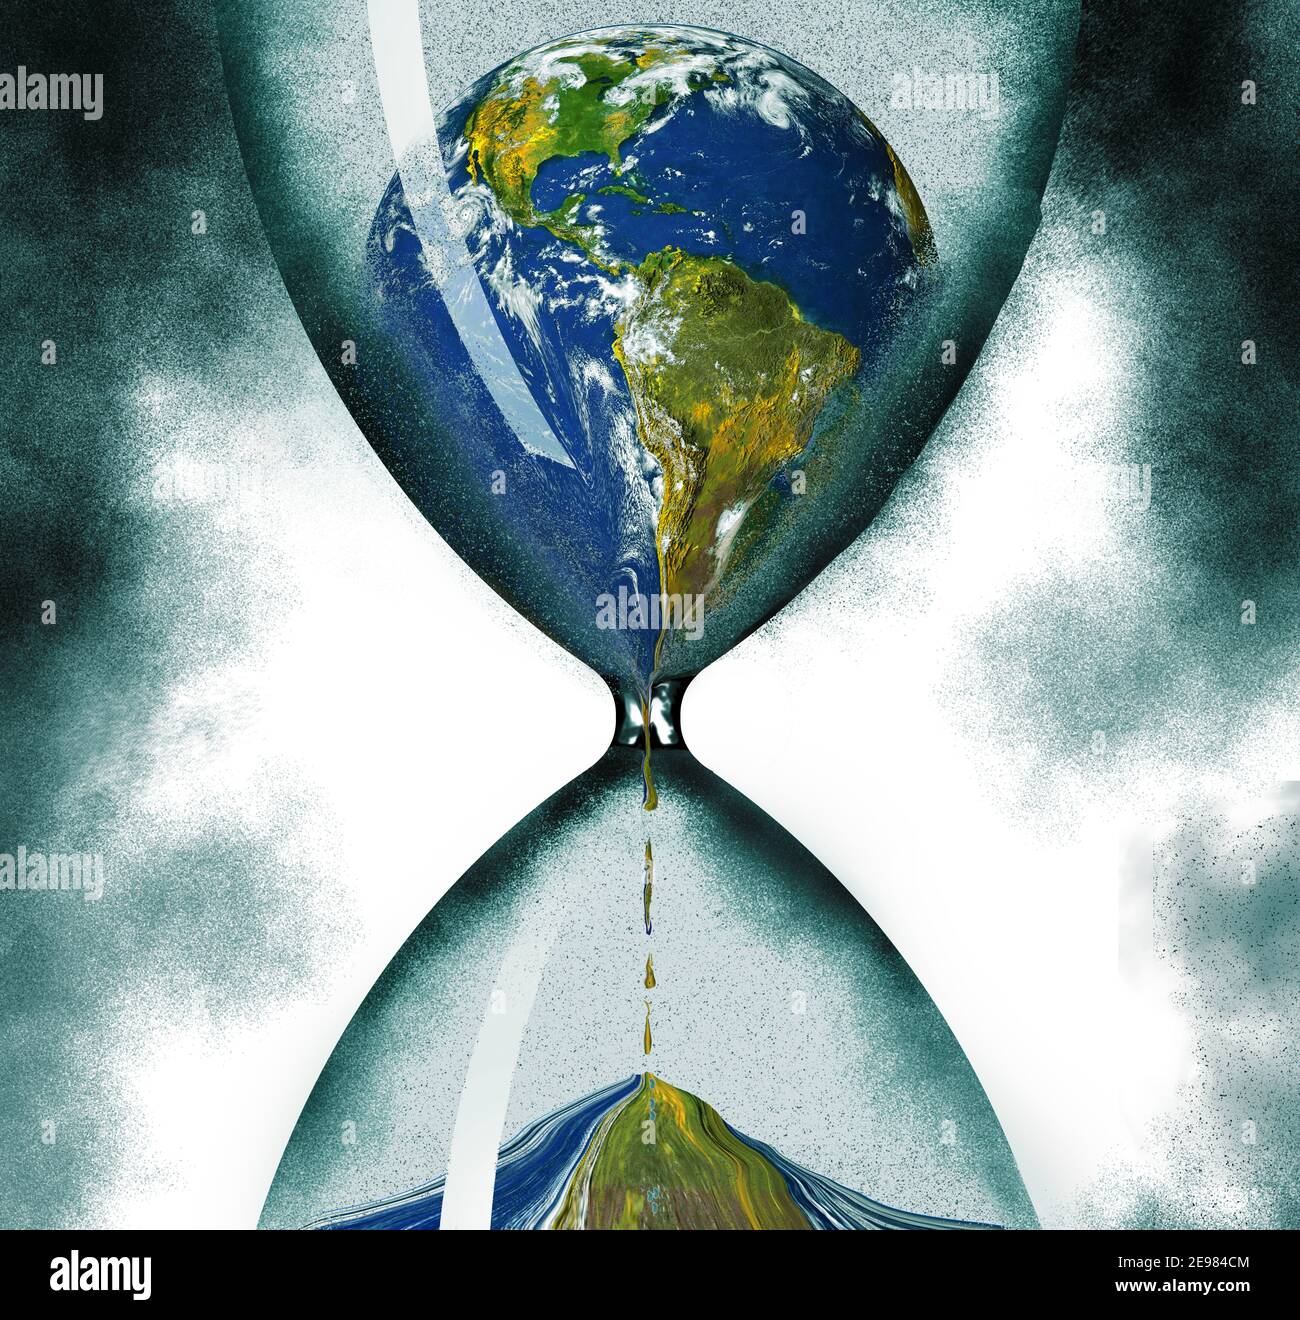 El tiempo que se agota en la ecología del planeta Tierra se ilustra con el planeta drenando a través de un reloj de arena. Esta es una ilustración en 3D. Foto de stock